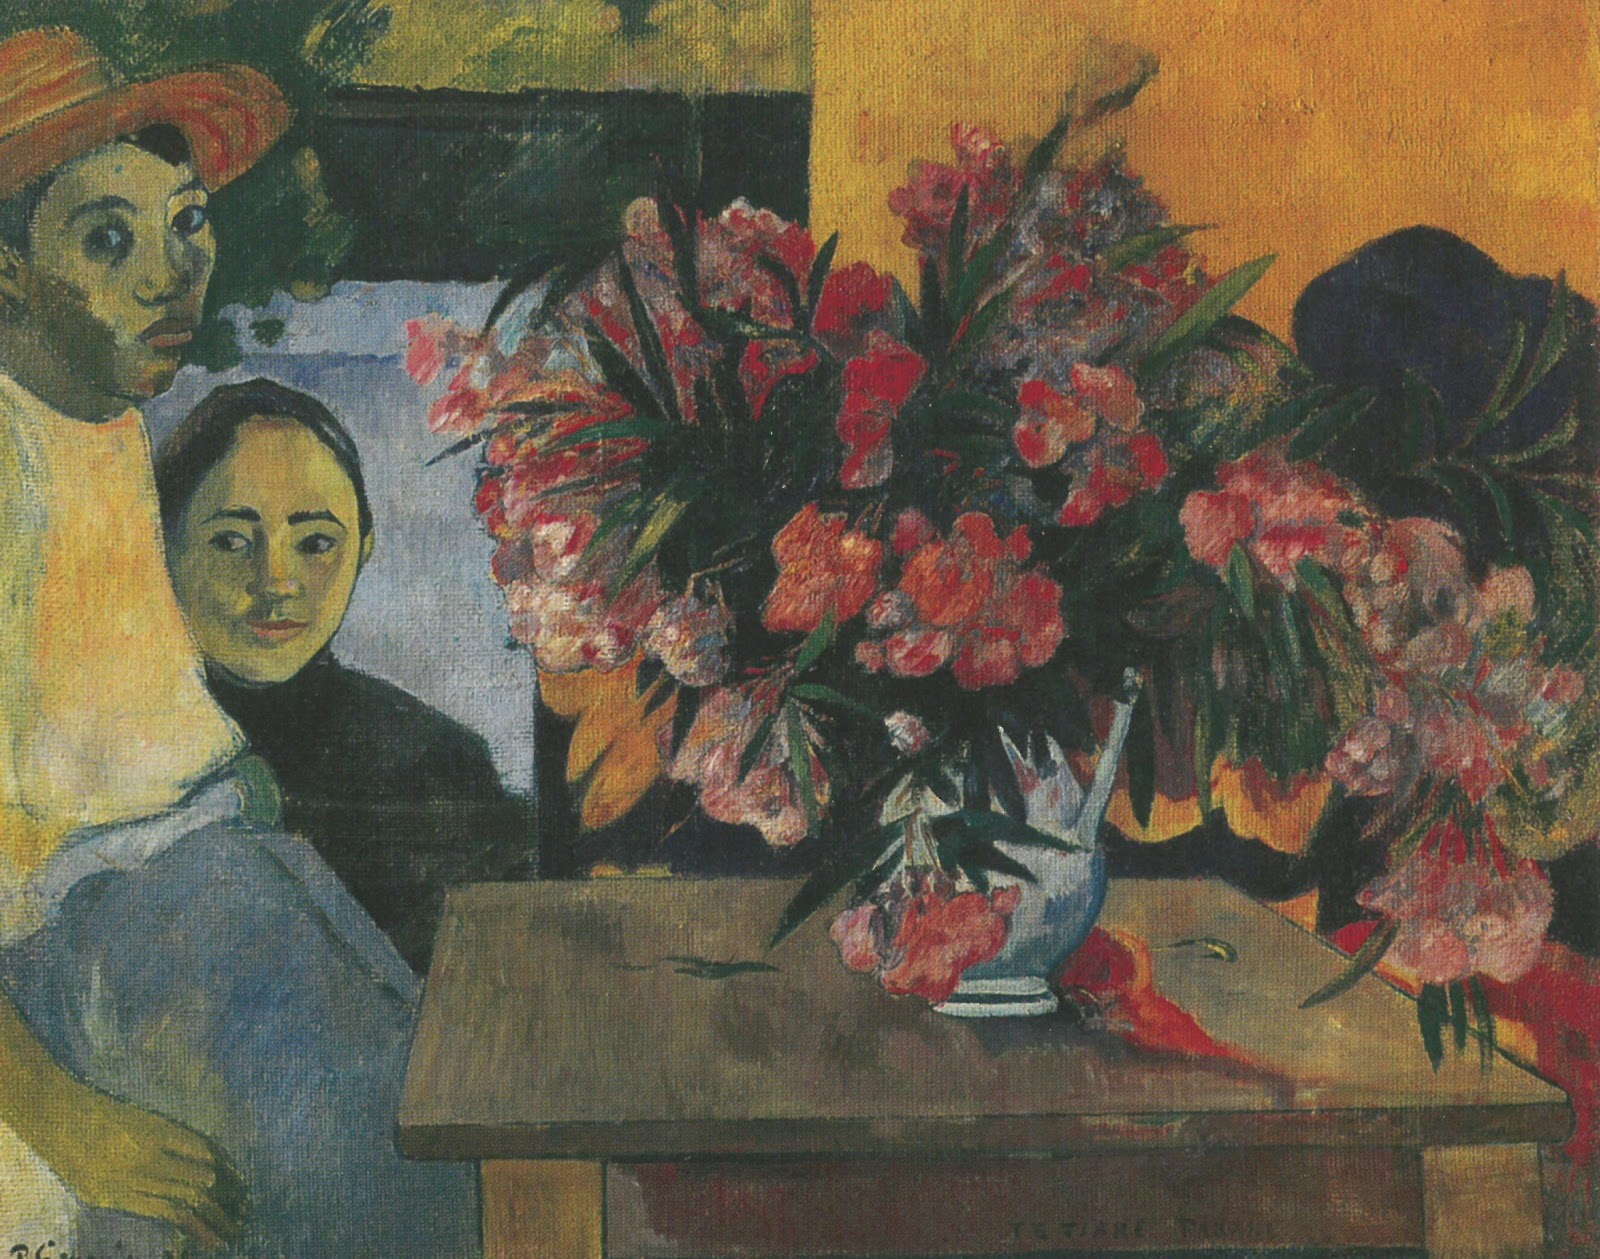 Paul+Gauguin-1848-1903 (479).jpg